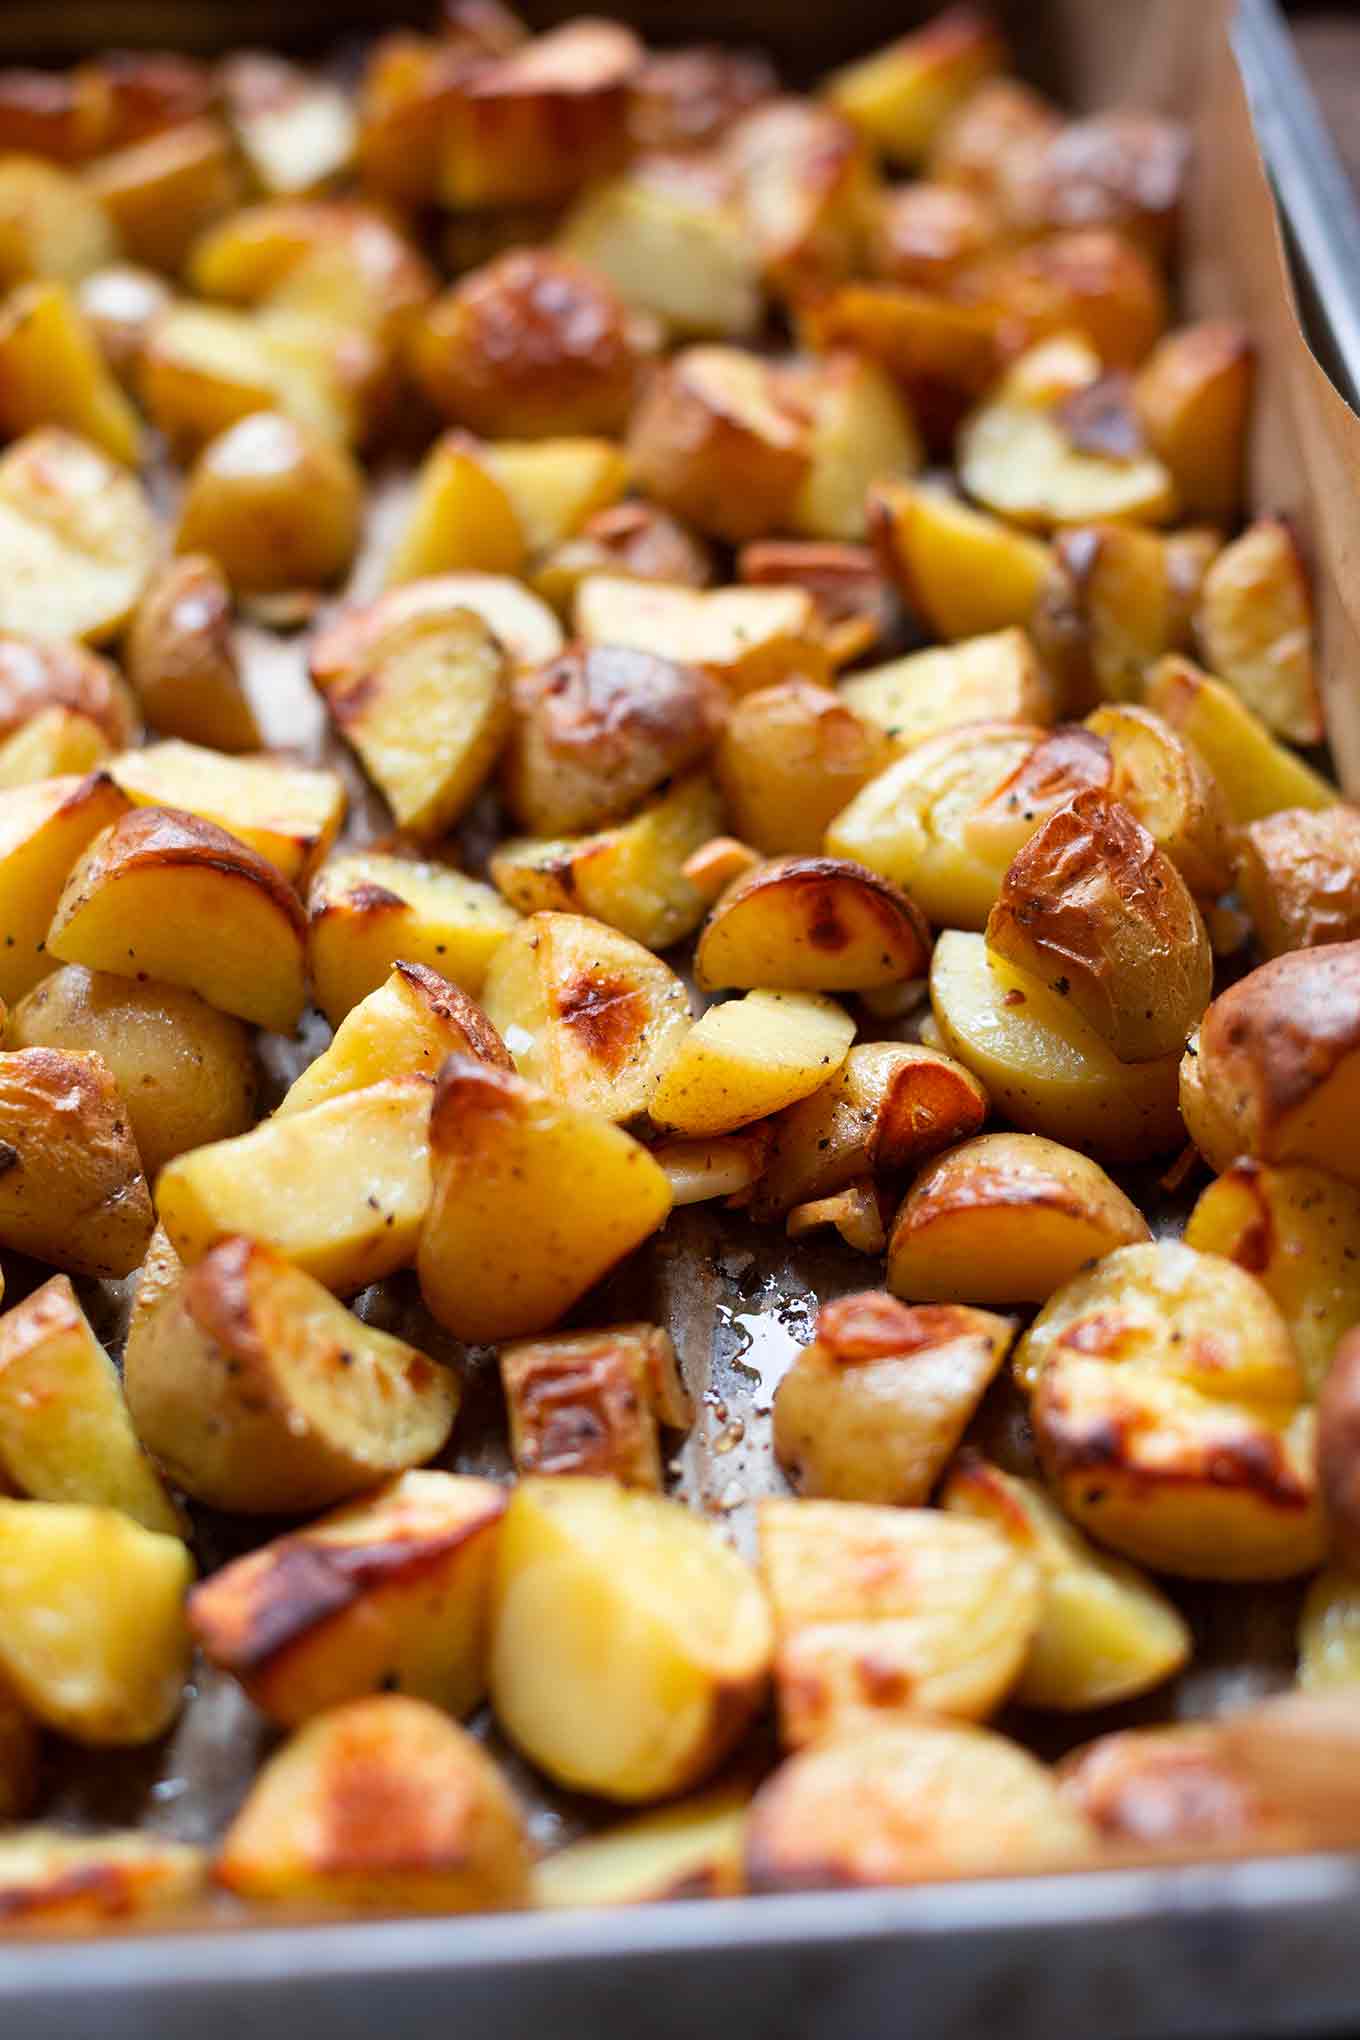 Einfache Knoblauch-Ofenkartoffeln mit Tzatziki. Dieses schnelle, einfache, vegetarische 5-Zutaten Rezept schmeckt immer! - Kochkarussell.com #ofenkartoffeln #tzatziki #feierabendküche #kochkarussell 